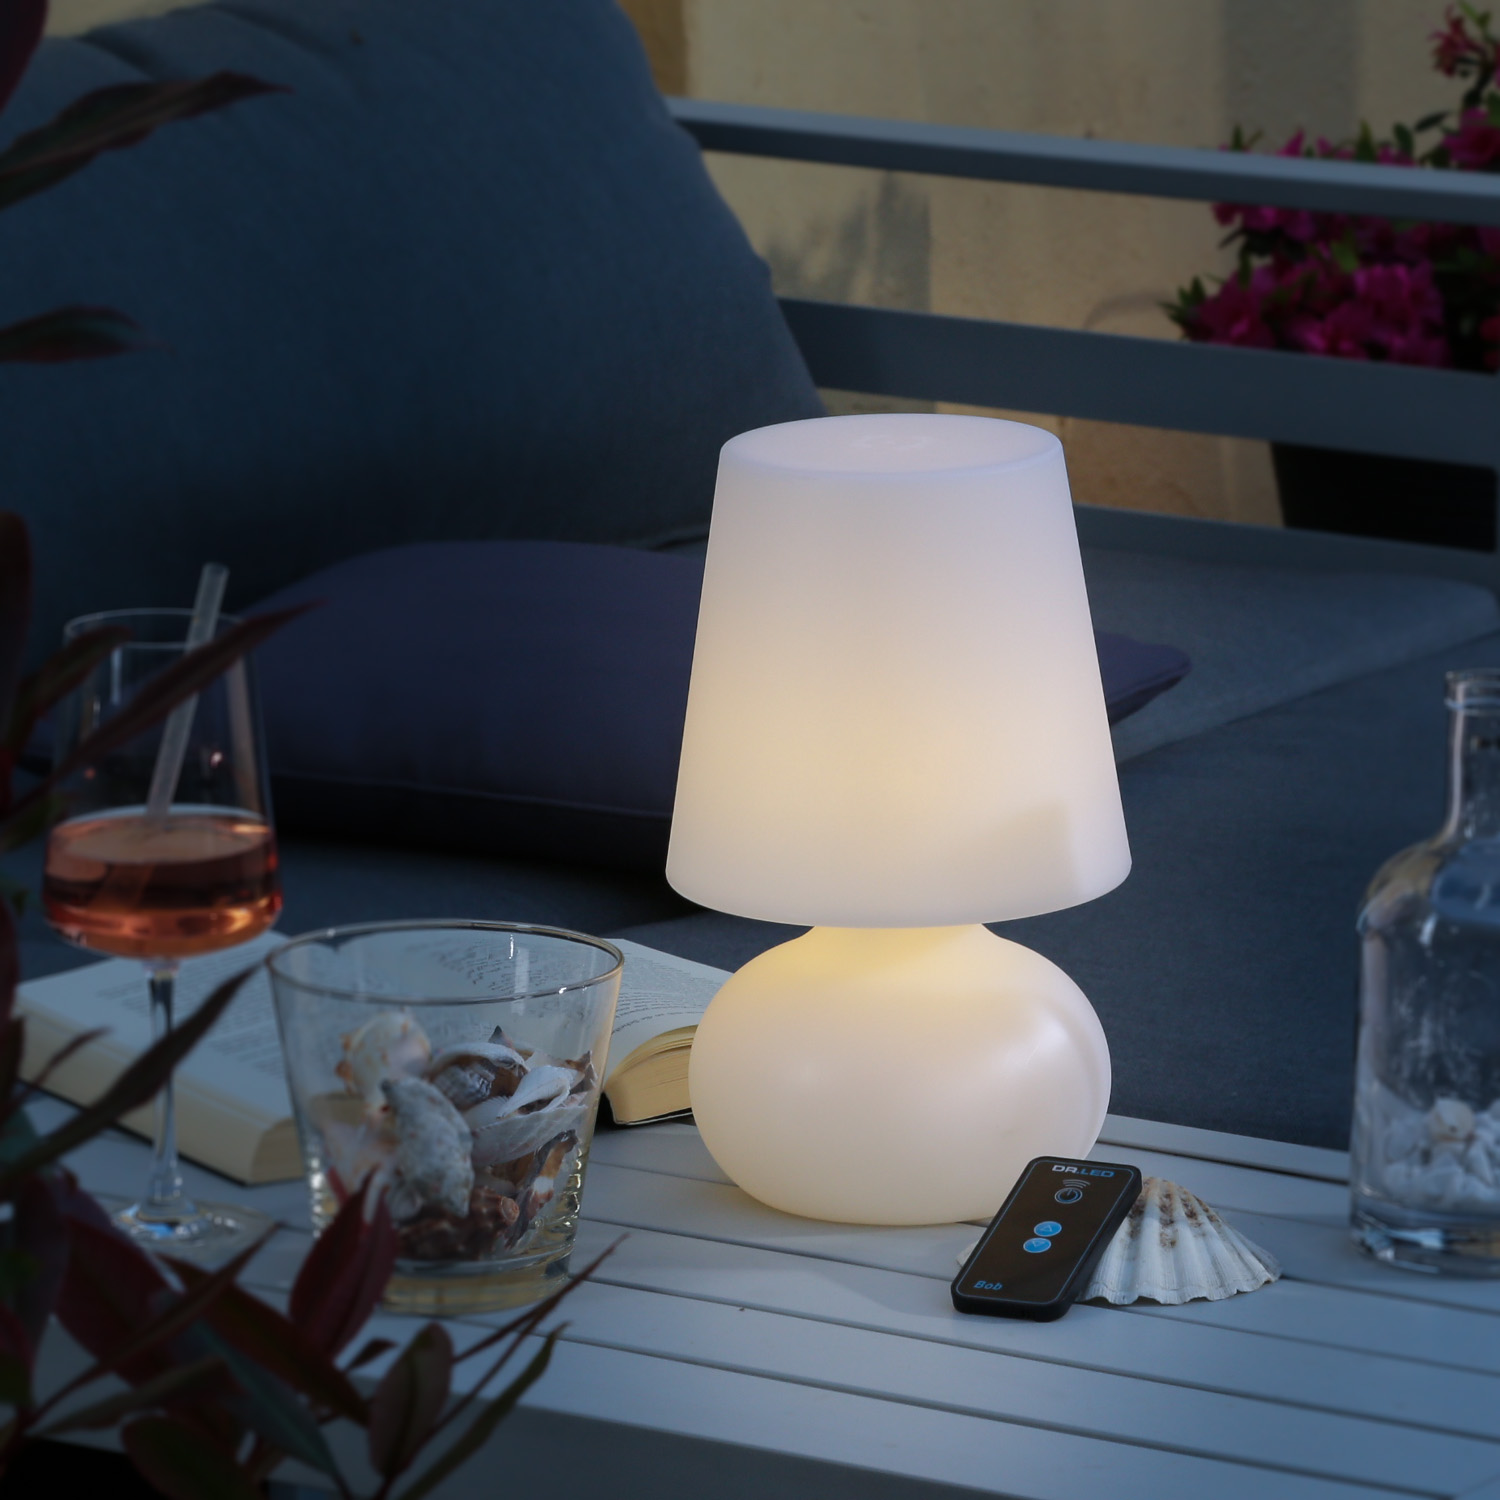 LED Garten Tischlampe - Schirmlampe - wetterfest - dimmbar - mit Fernbedienung - aufladbar - H: 26cm